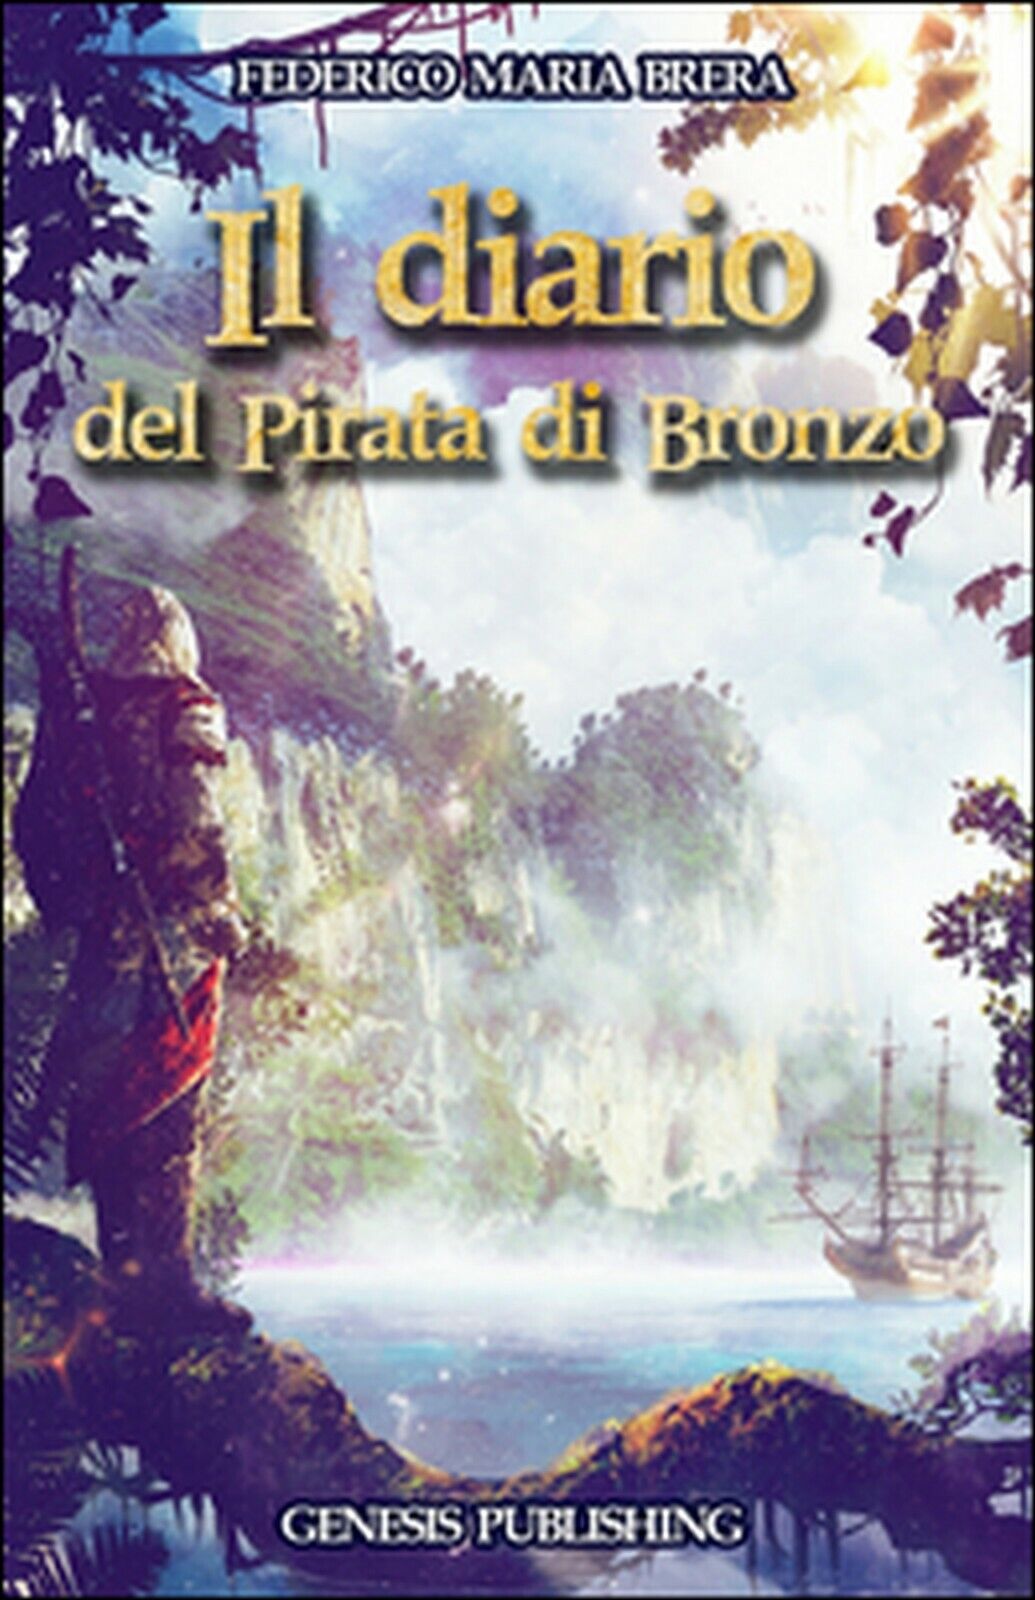 Il diario del Pirata di Bronzo  di Federico M. Brera,  2016,  Genesis Publishing